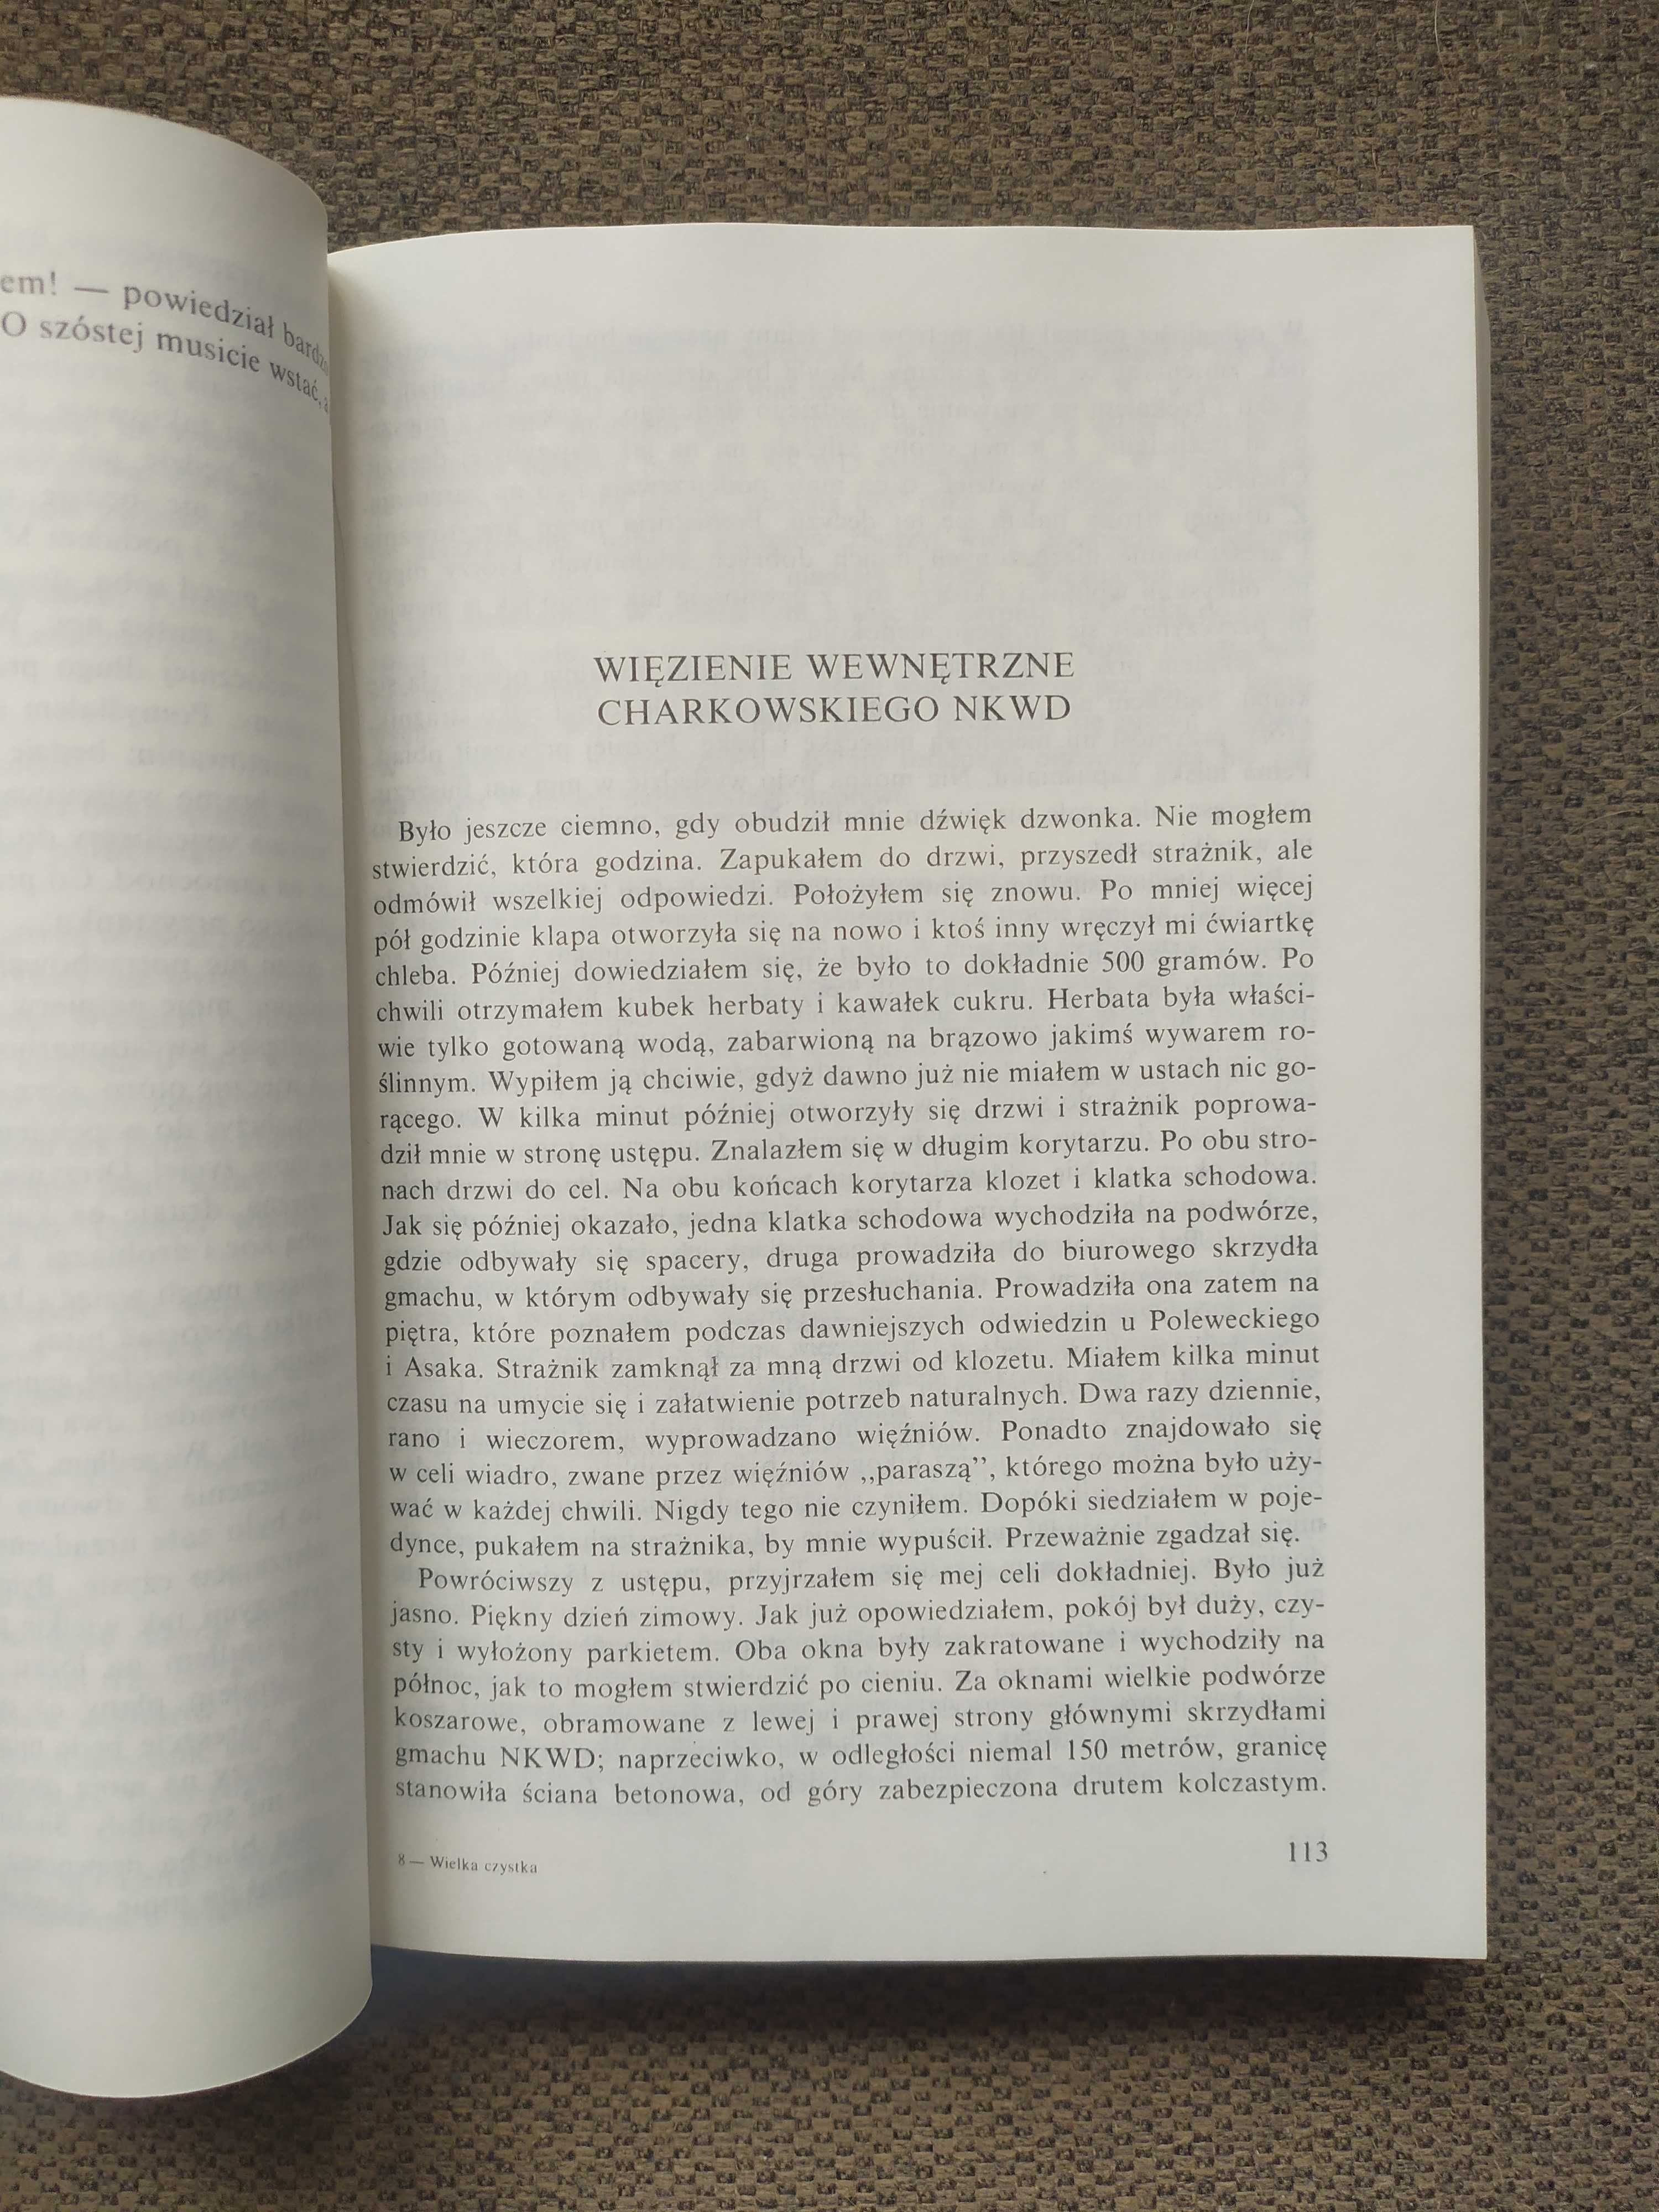 Wielka czystka, Aleksander Weissberg-Cybulski, biografia